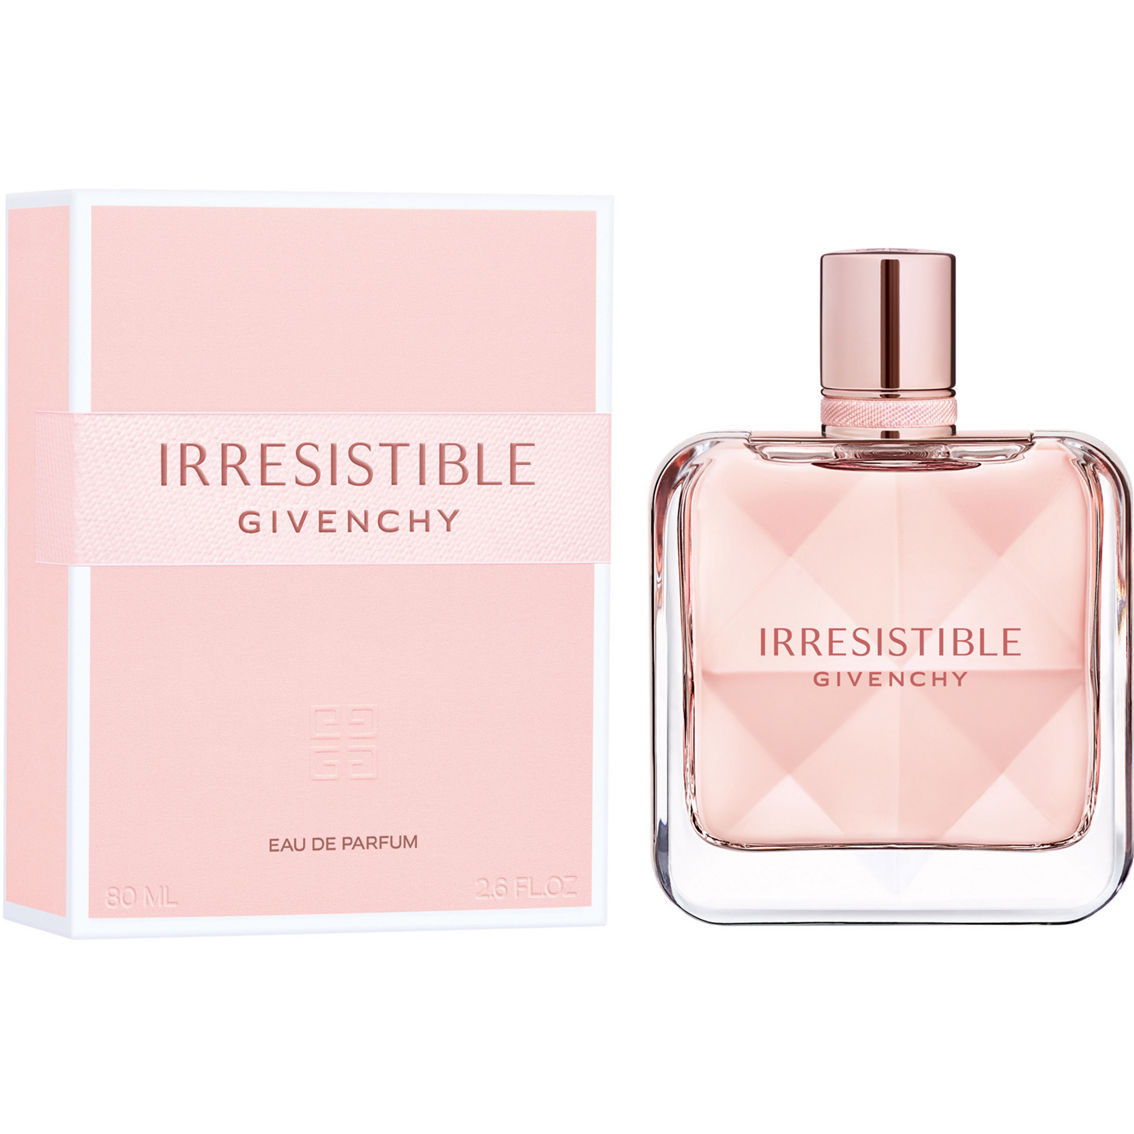 Givenchy Irresistible Eau de Parfum - Image 2 of 3